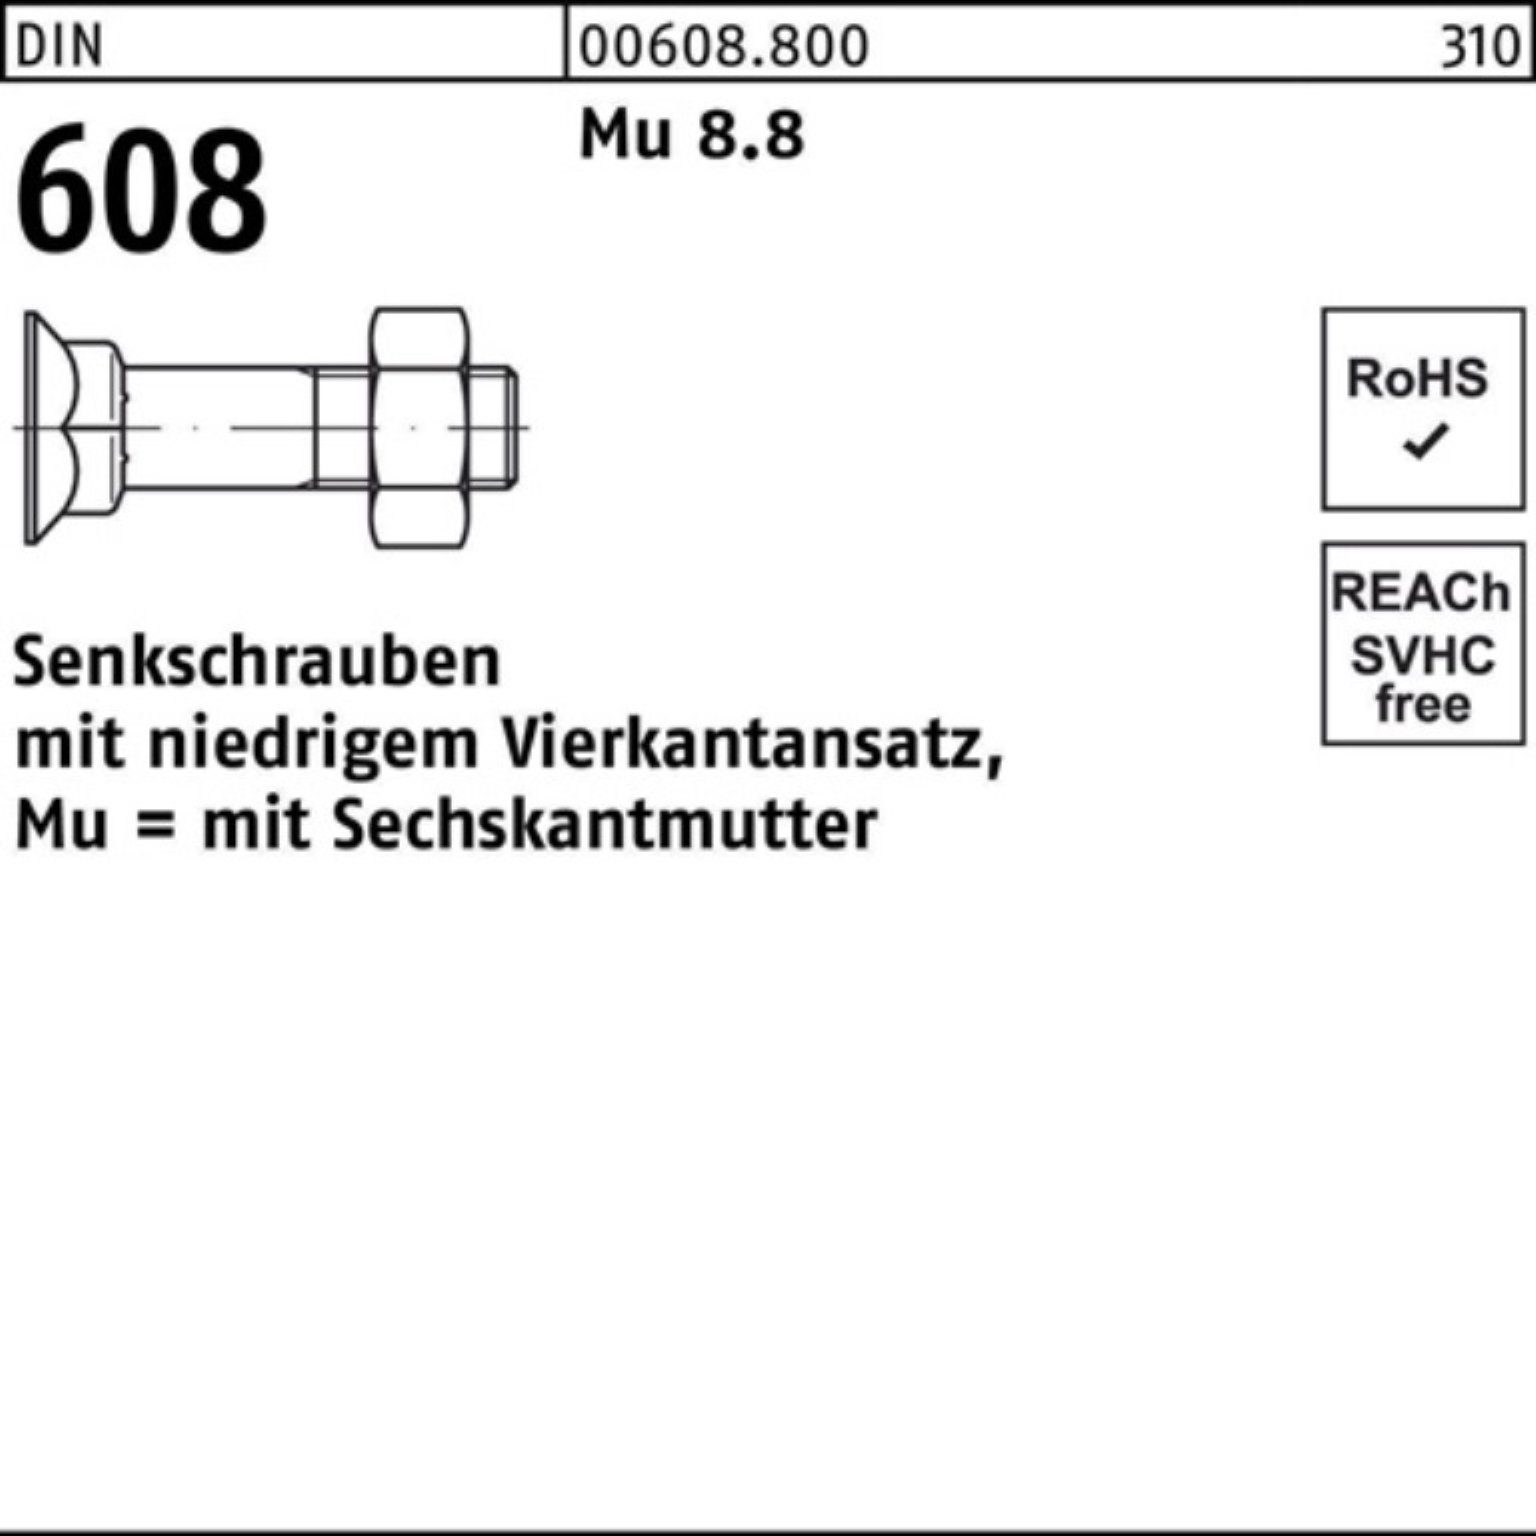 Reyher Senkschraube 100er Pack 4-ktansatz/6-ktmutter Mu 8.8 DIN Senkschraube M10x 40 608 1